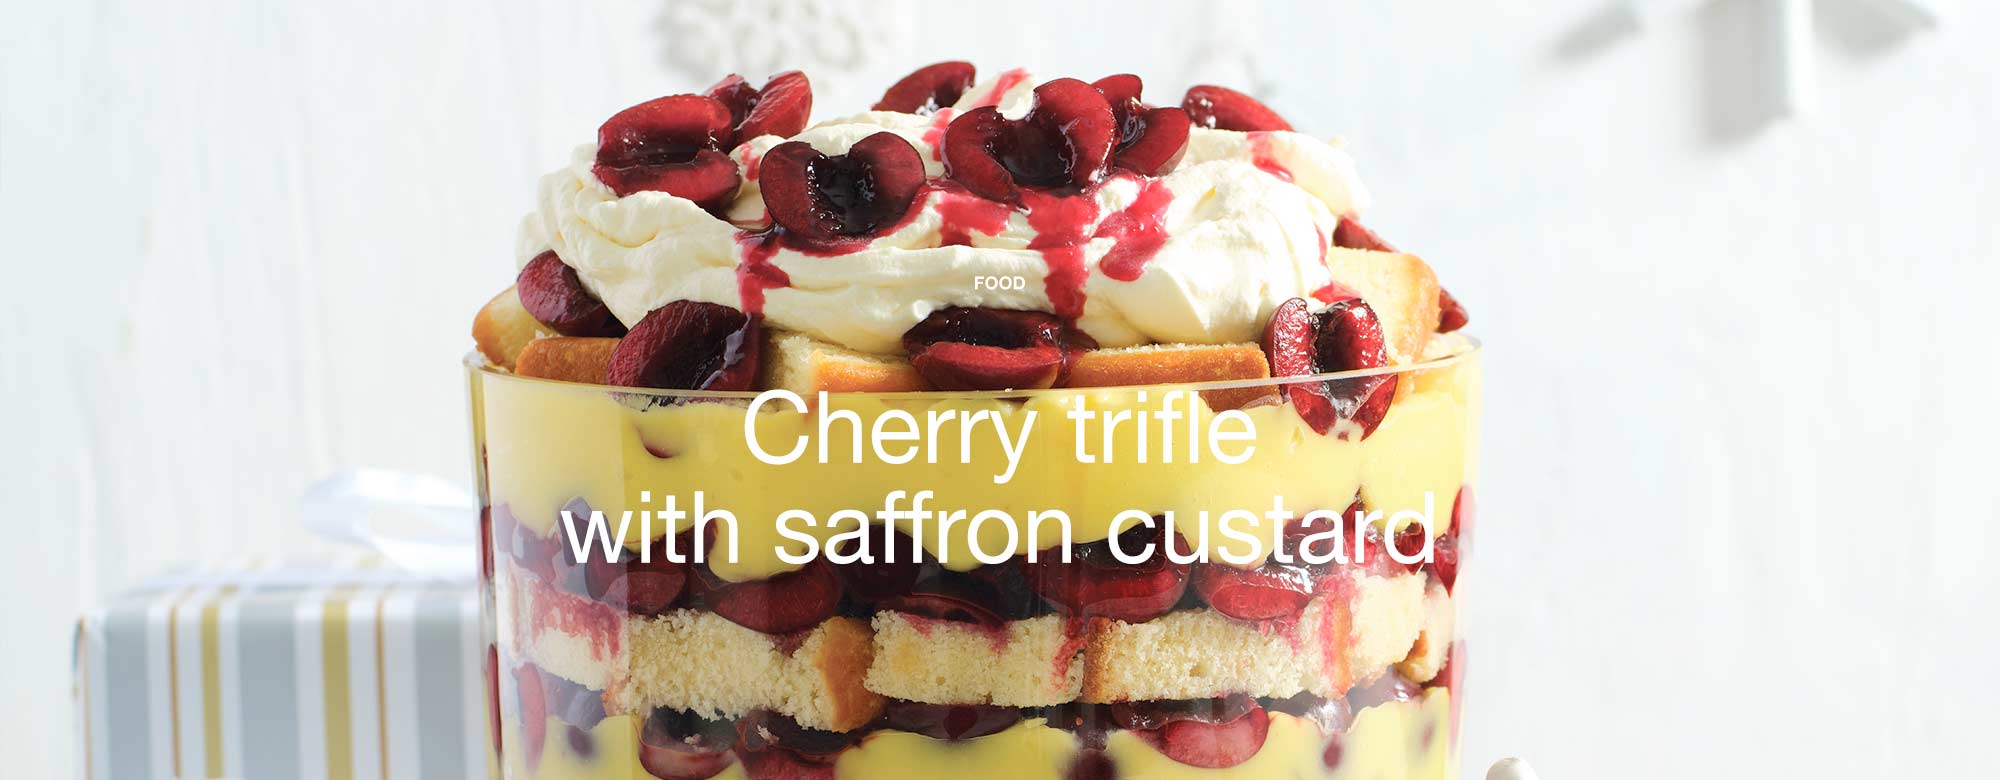 Cherry trifle with saffron custard